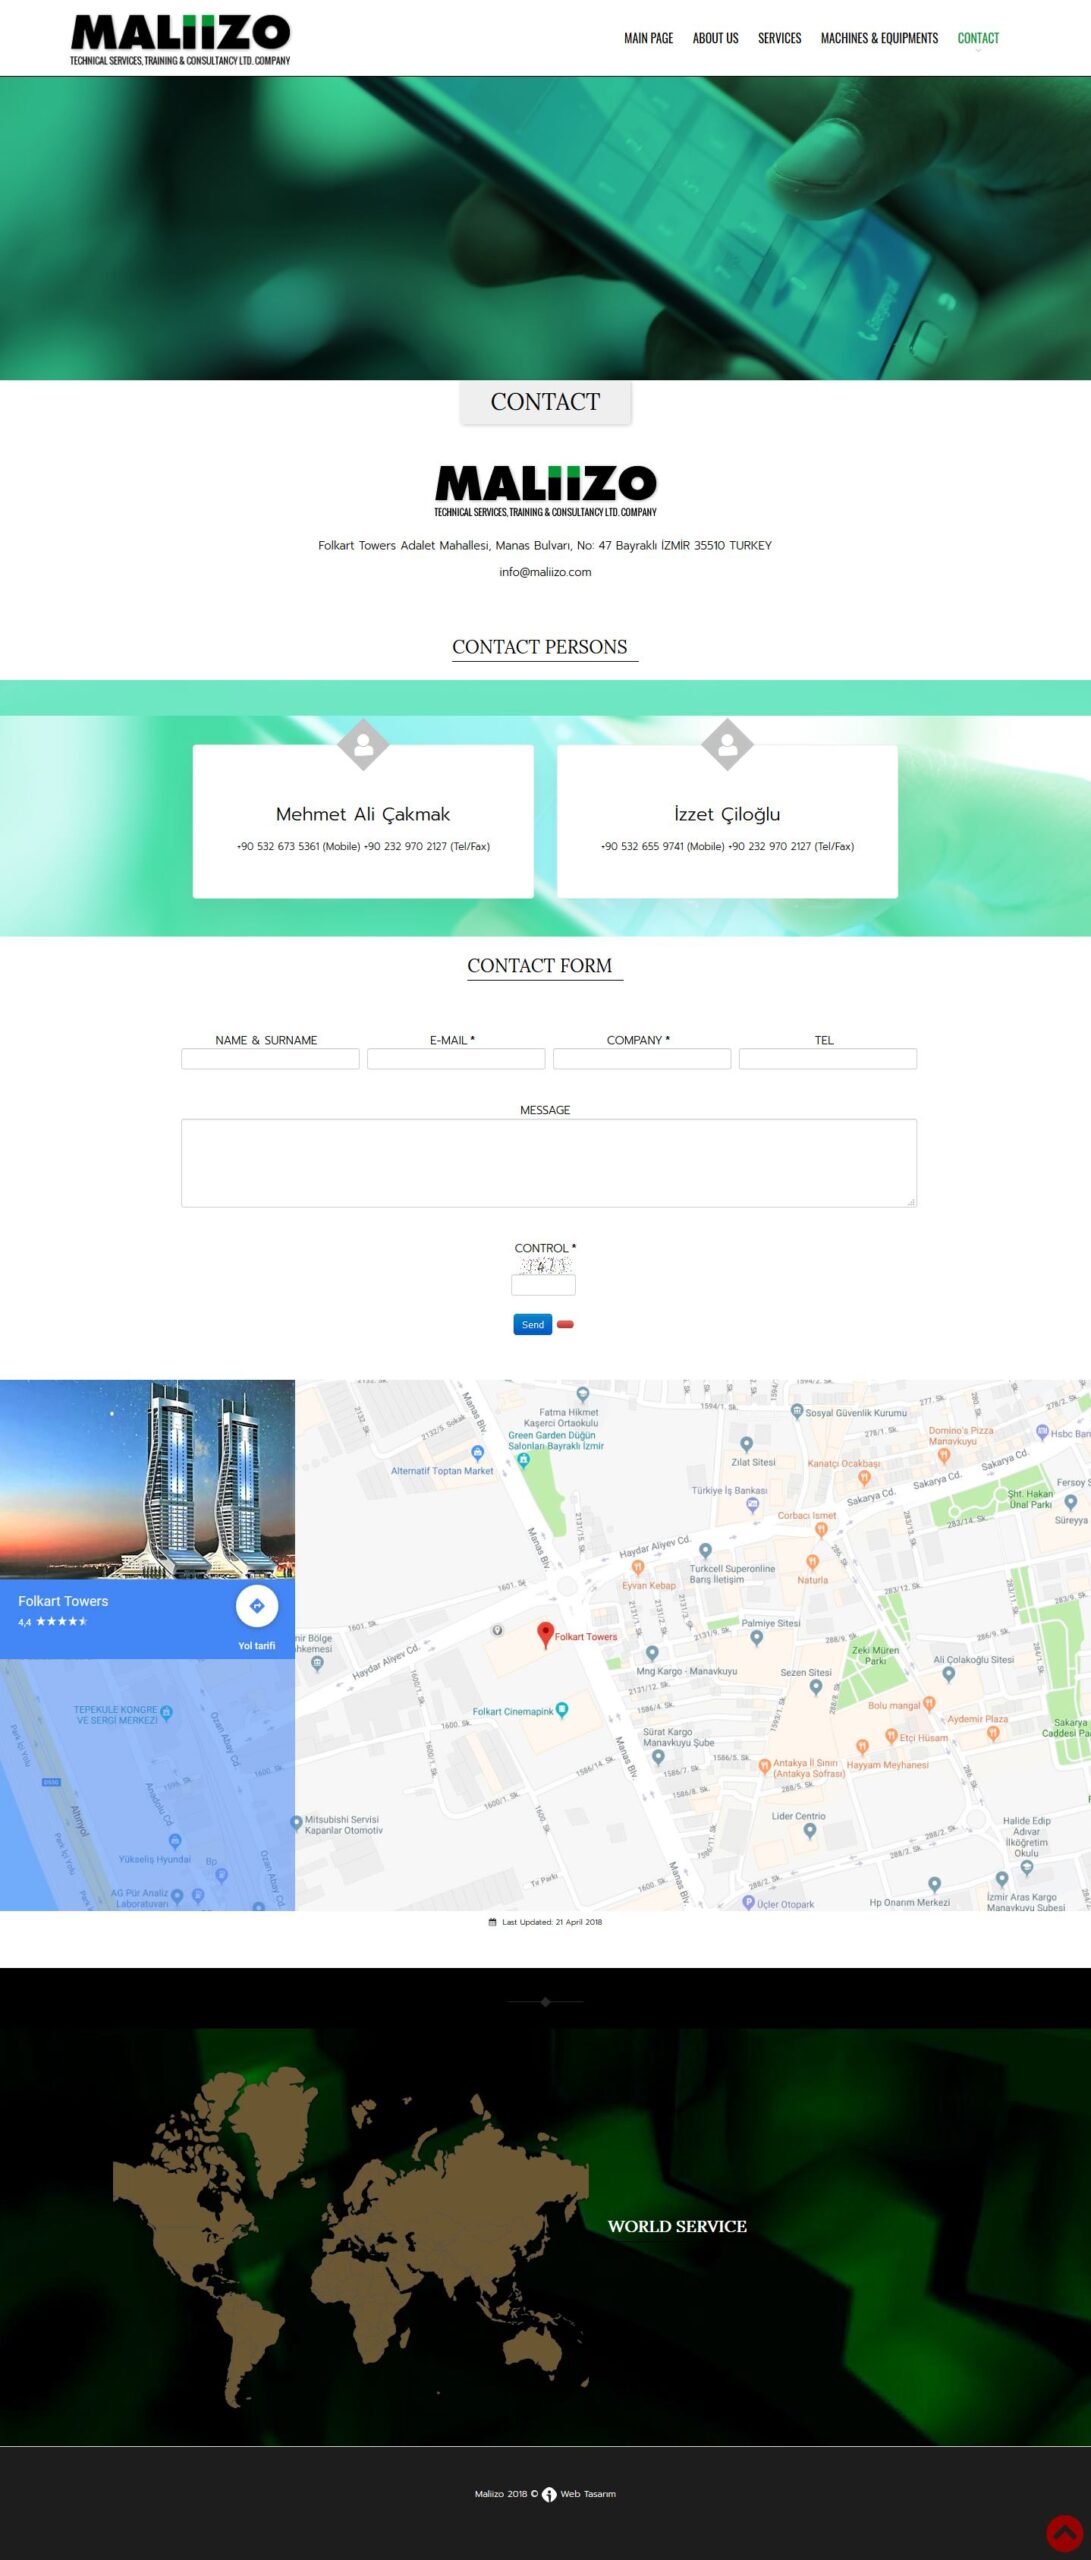 Maliizo Servis web sitesi iletişim sayfası tasarımı